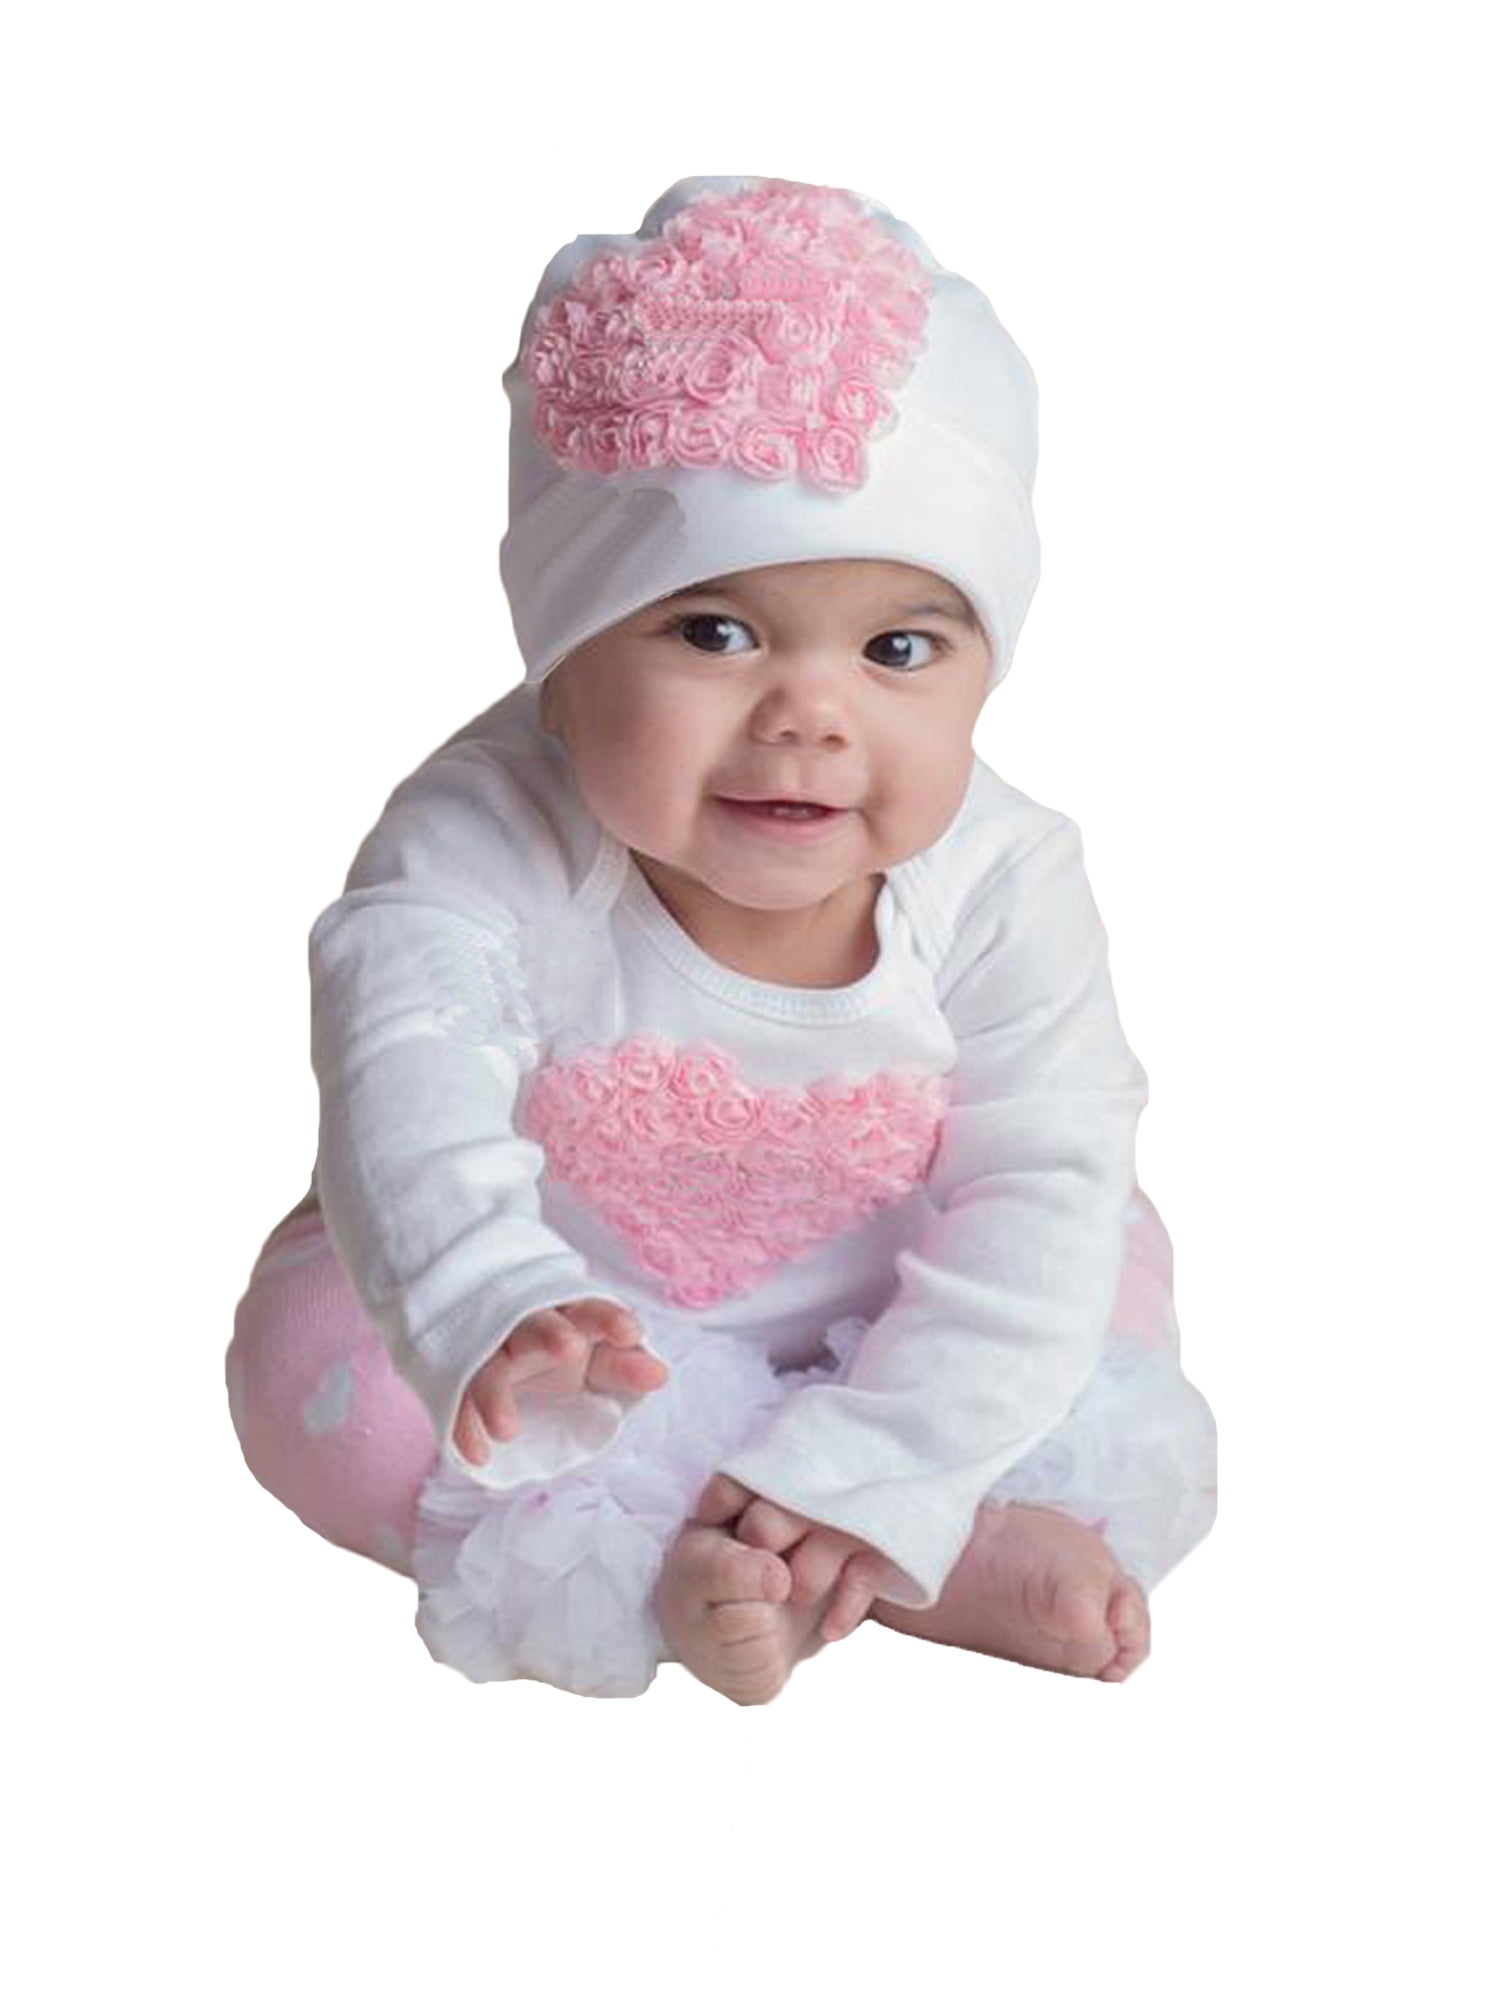 Details about   Pink Baby Girls' Cotton Romper 'My Friend Rabbit' Newborn to 12 months. 